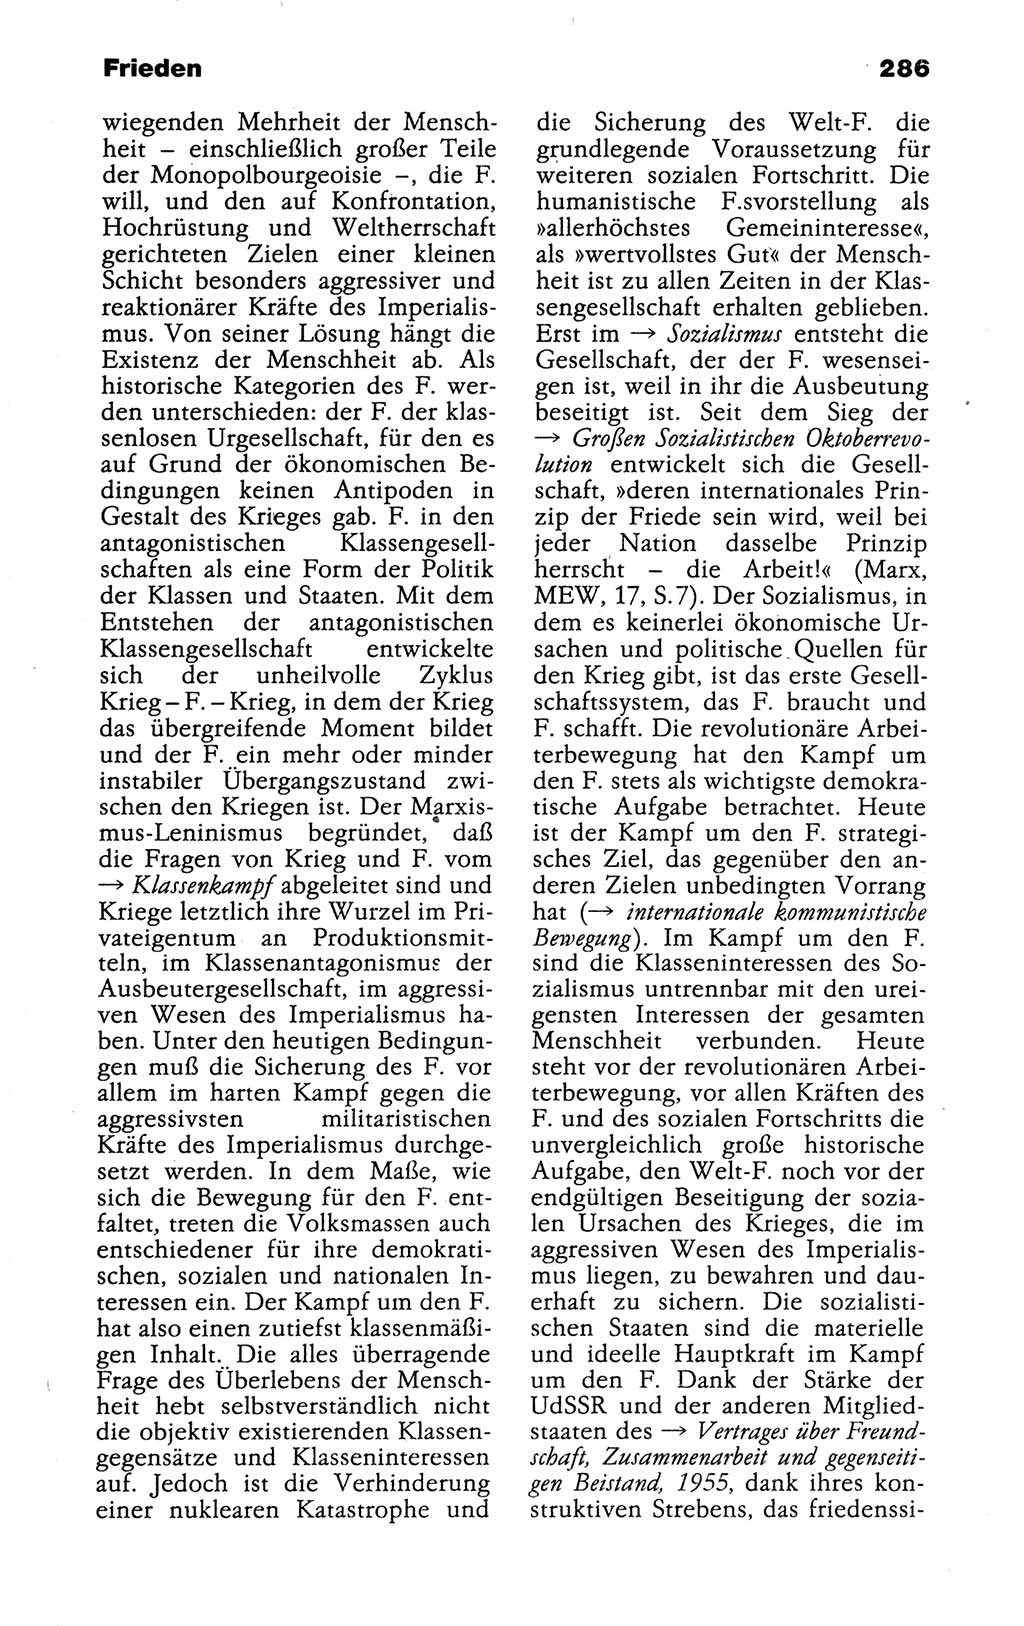 Kleines politisches Wörterbuch [Deutsche Demokratische Republik (DDR)] 1988, Seite 286 (Kl. pol. Wb. DDR 1988, S. 286)